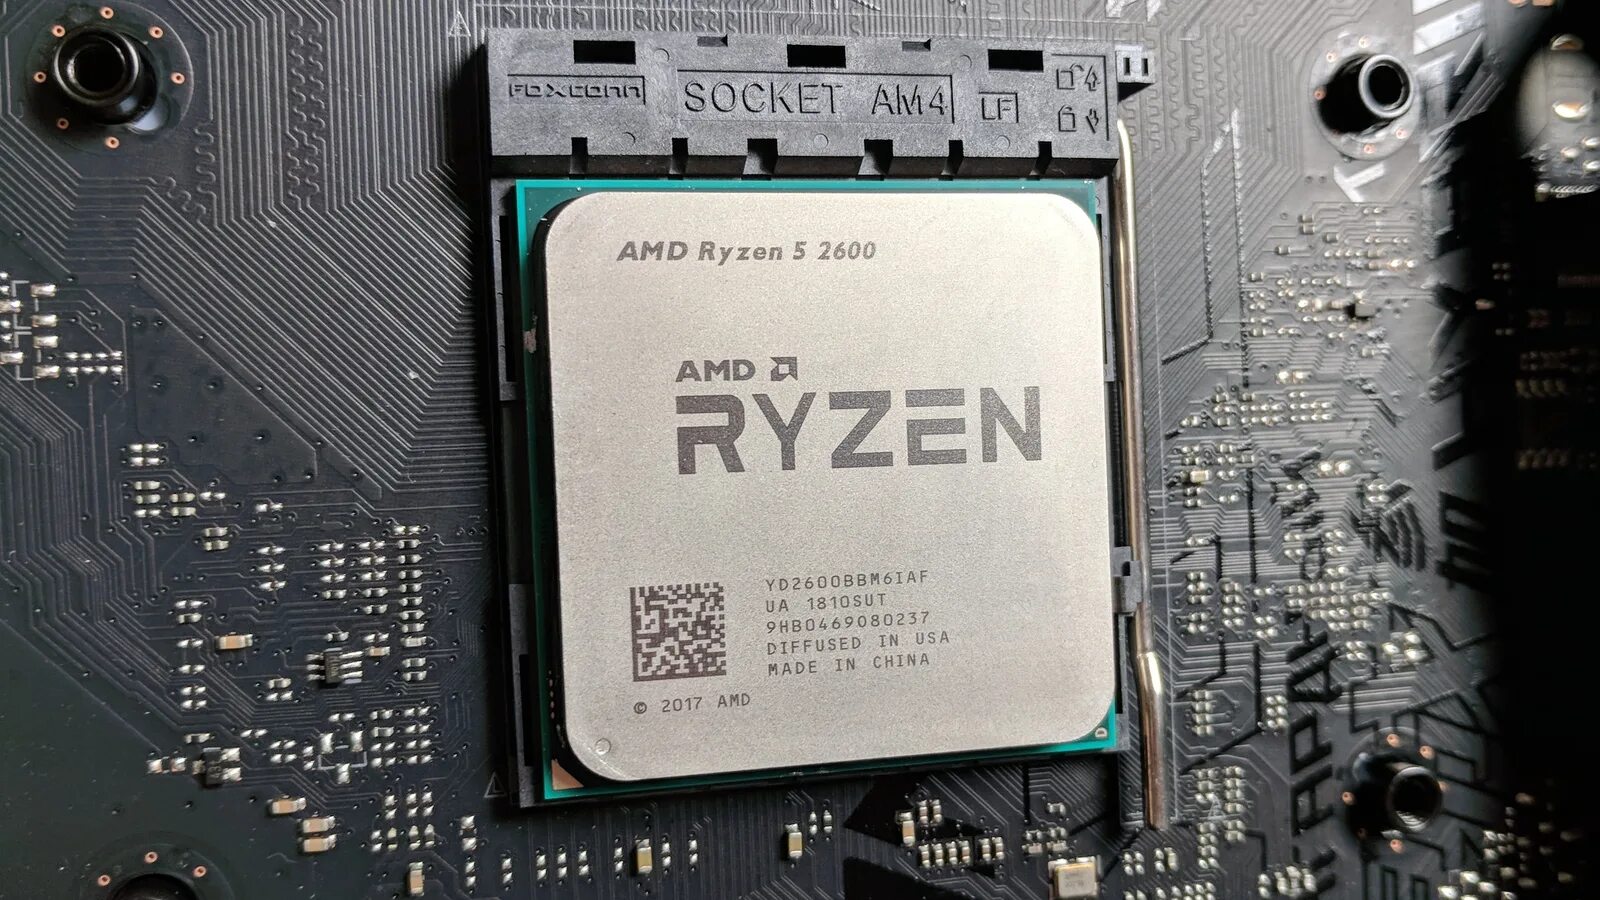 AMD Ryzen 5 2600. Процессор AMD Ryzen 5 2600x. Процессор AMD Ryzen 5 2600 am4. Ryzen 5 2500. Amd radeon r5 процессоры